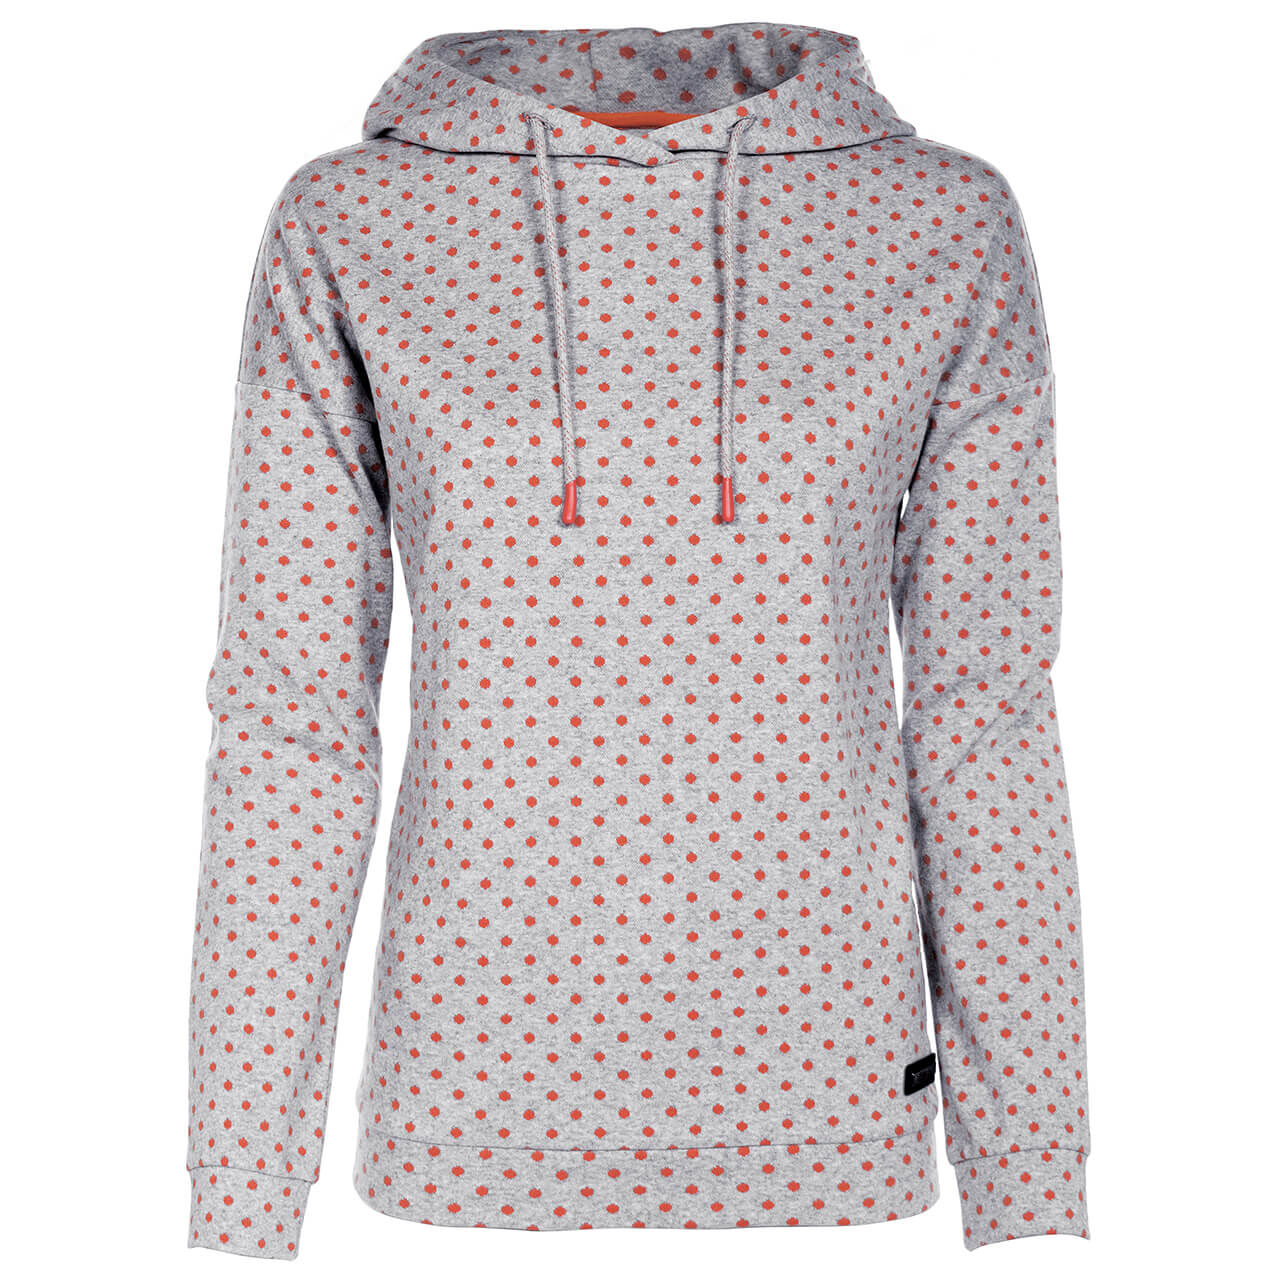 Soquesto Hoodie Sweatshirt für Damen in Grau gepunktet, FarbNr.: 9510